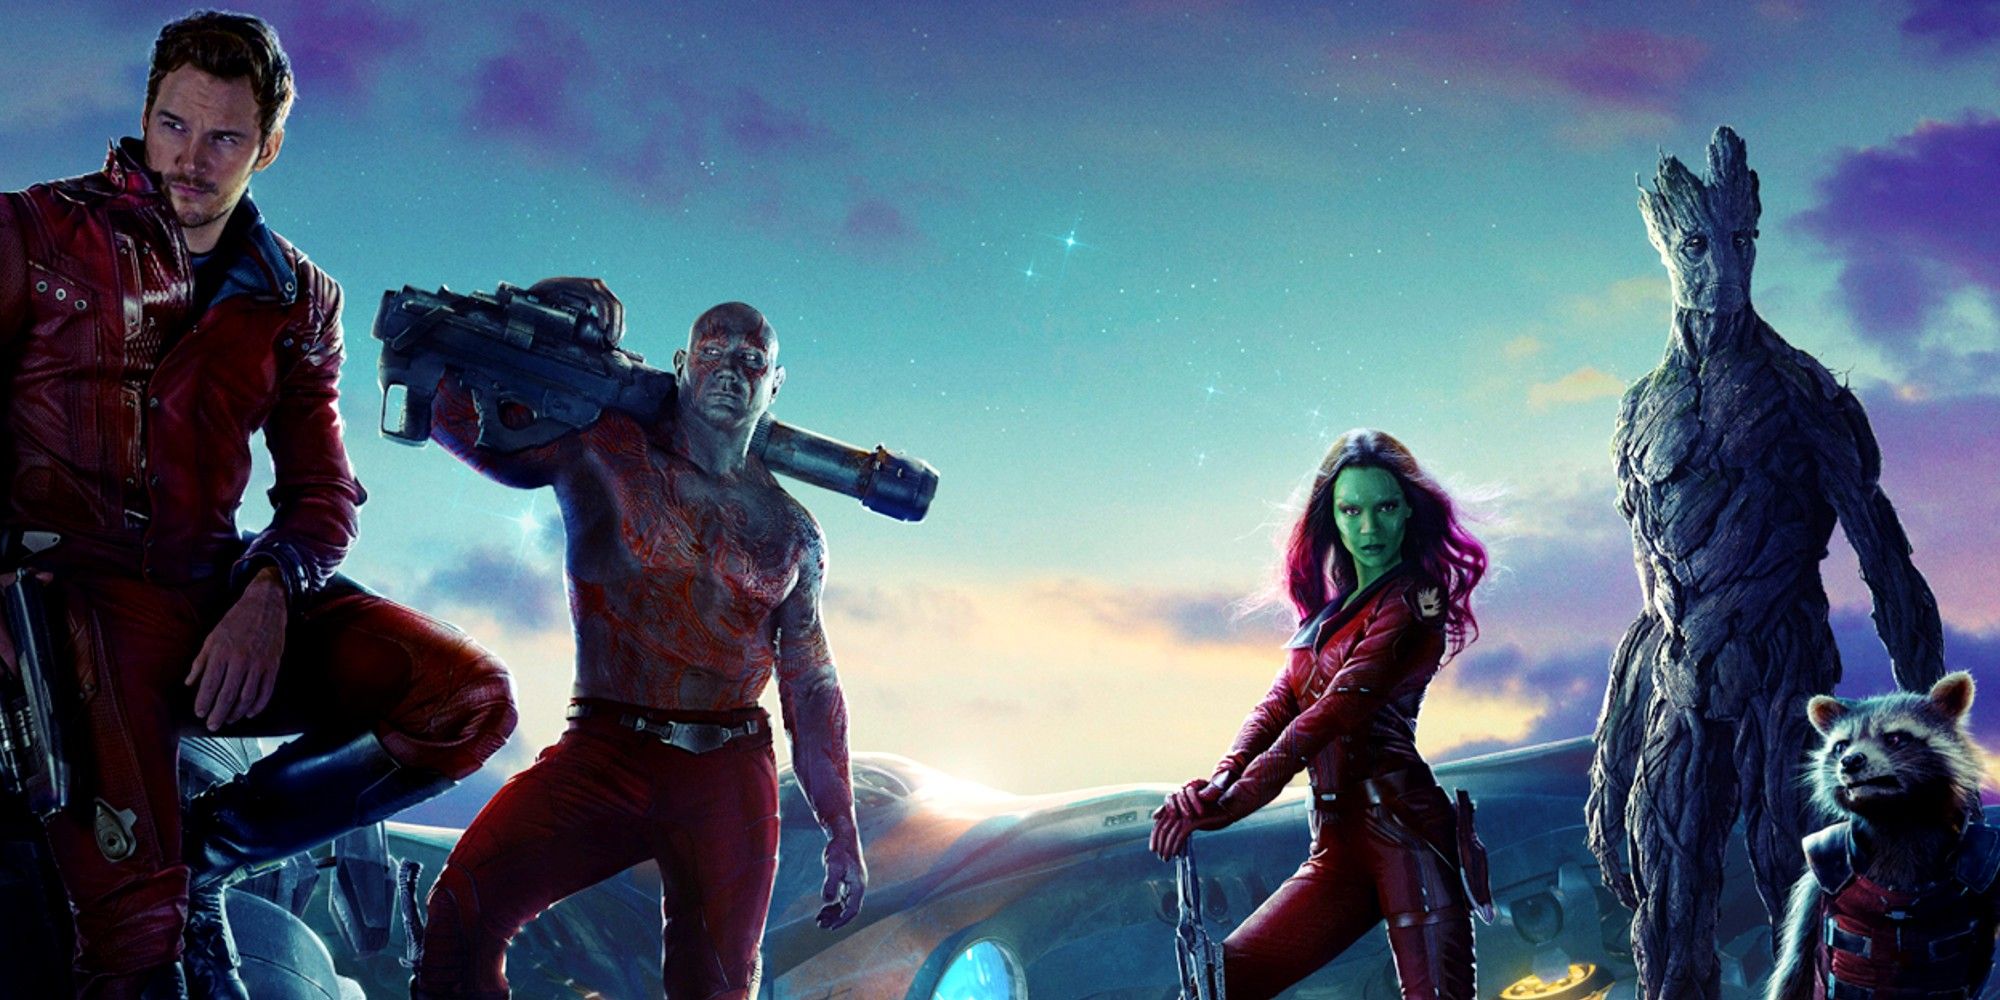 Guardians Of The Galaxy Volume 1 Team Poster Chris Pratt as Star Lord Dave Bautista as Drax Zoe Saldana as Gamora Vin Diesel as Groot and Bradley Cooper as Rocket Raccoon